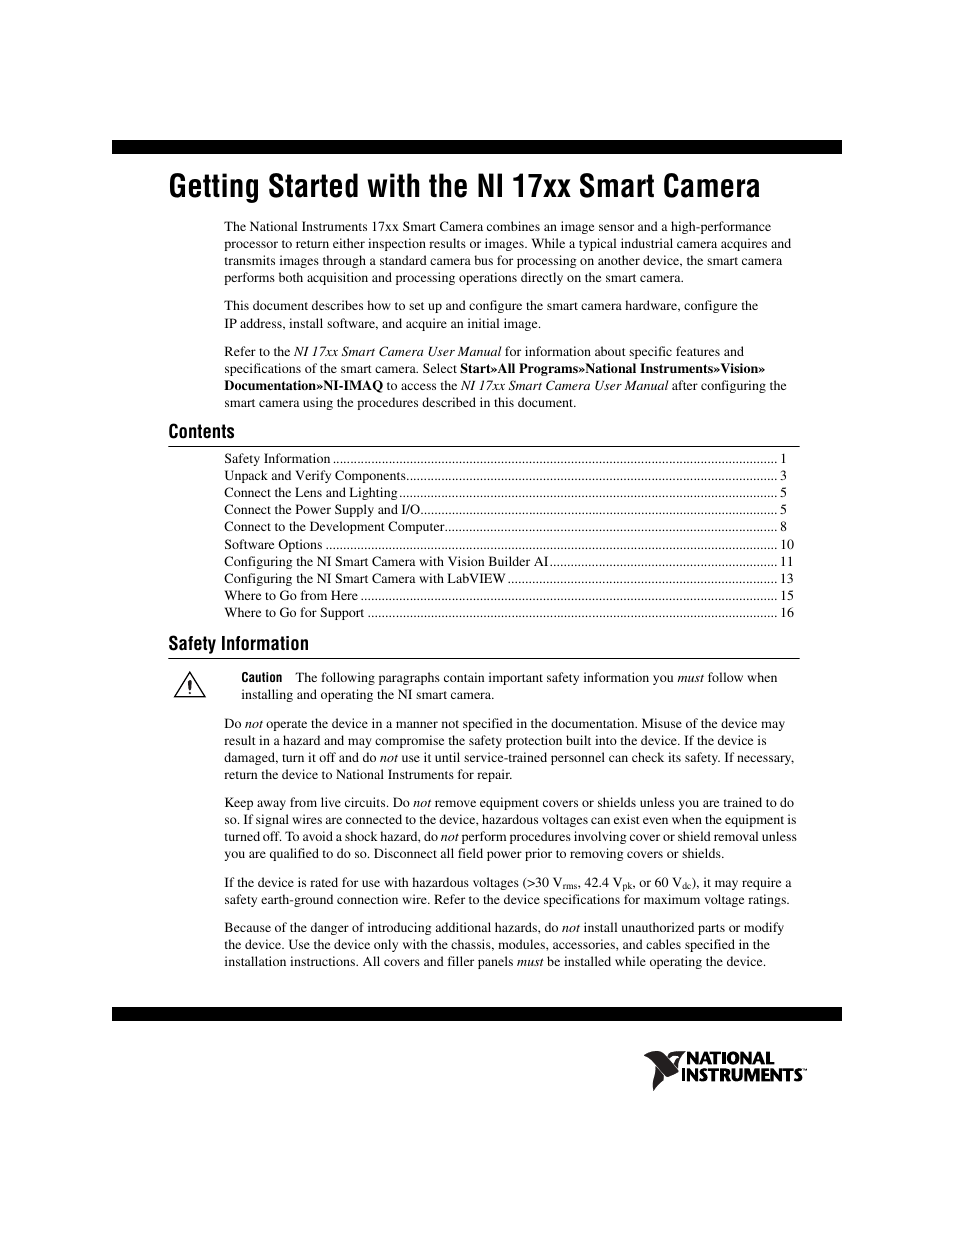 National Instruments NI Vision NI 17xx User Manual | 16 pages